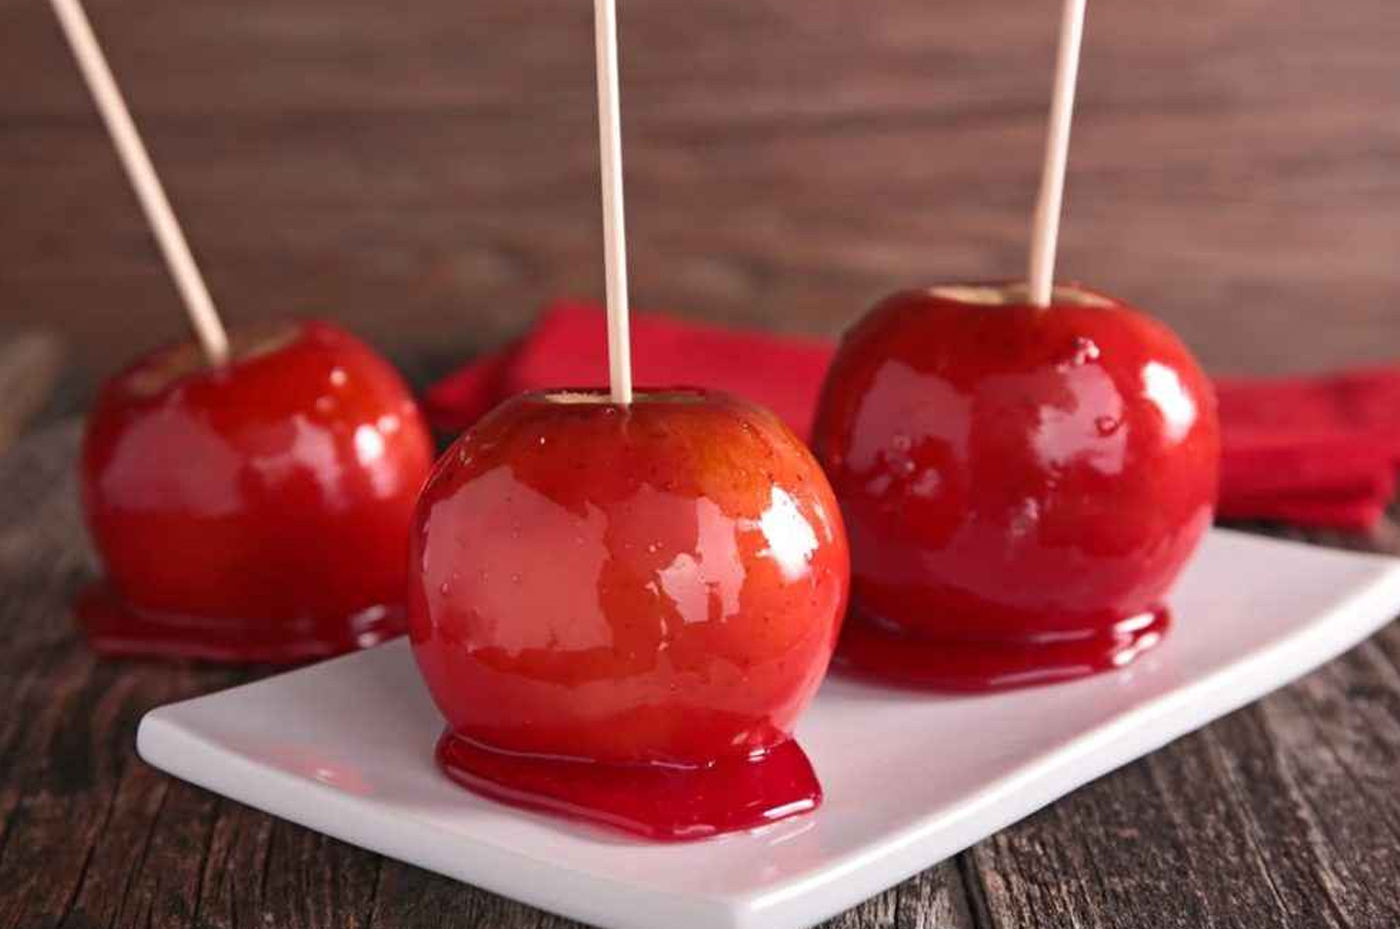 Maçã do amor Maçãs cobertas com uma camada brilhante de caramelo vermelho, uma opção deliciosa para os amantes de doces.